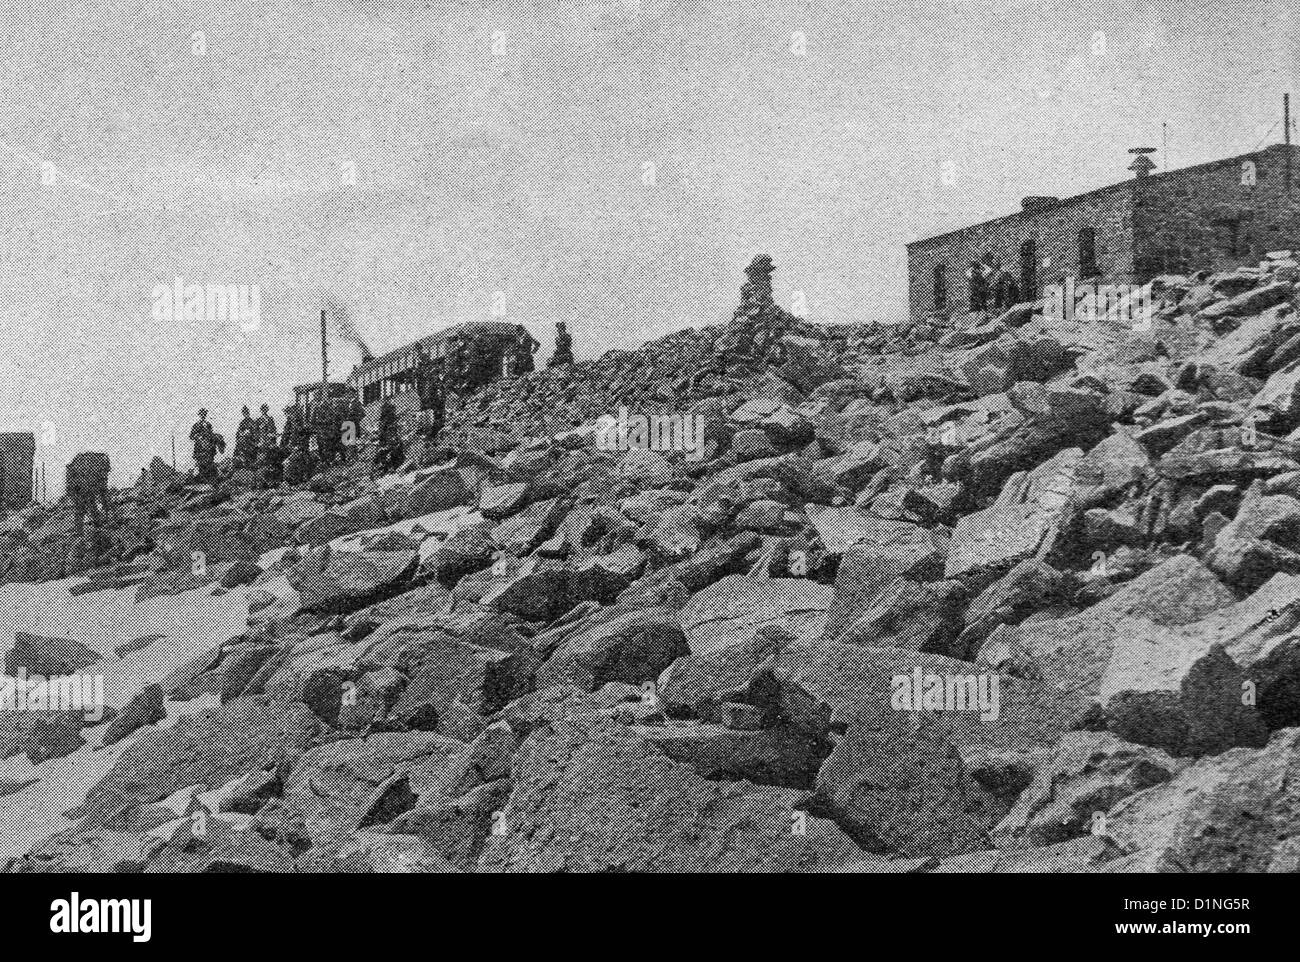 Estación de servicio de señal - Cumbre del pico - la minería en la región occidental de América, circa 1895 Foto de stock